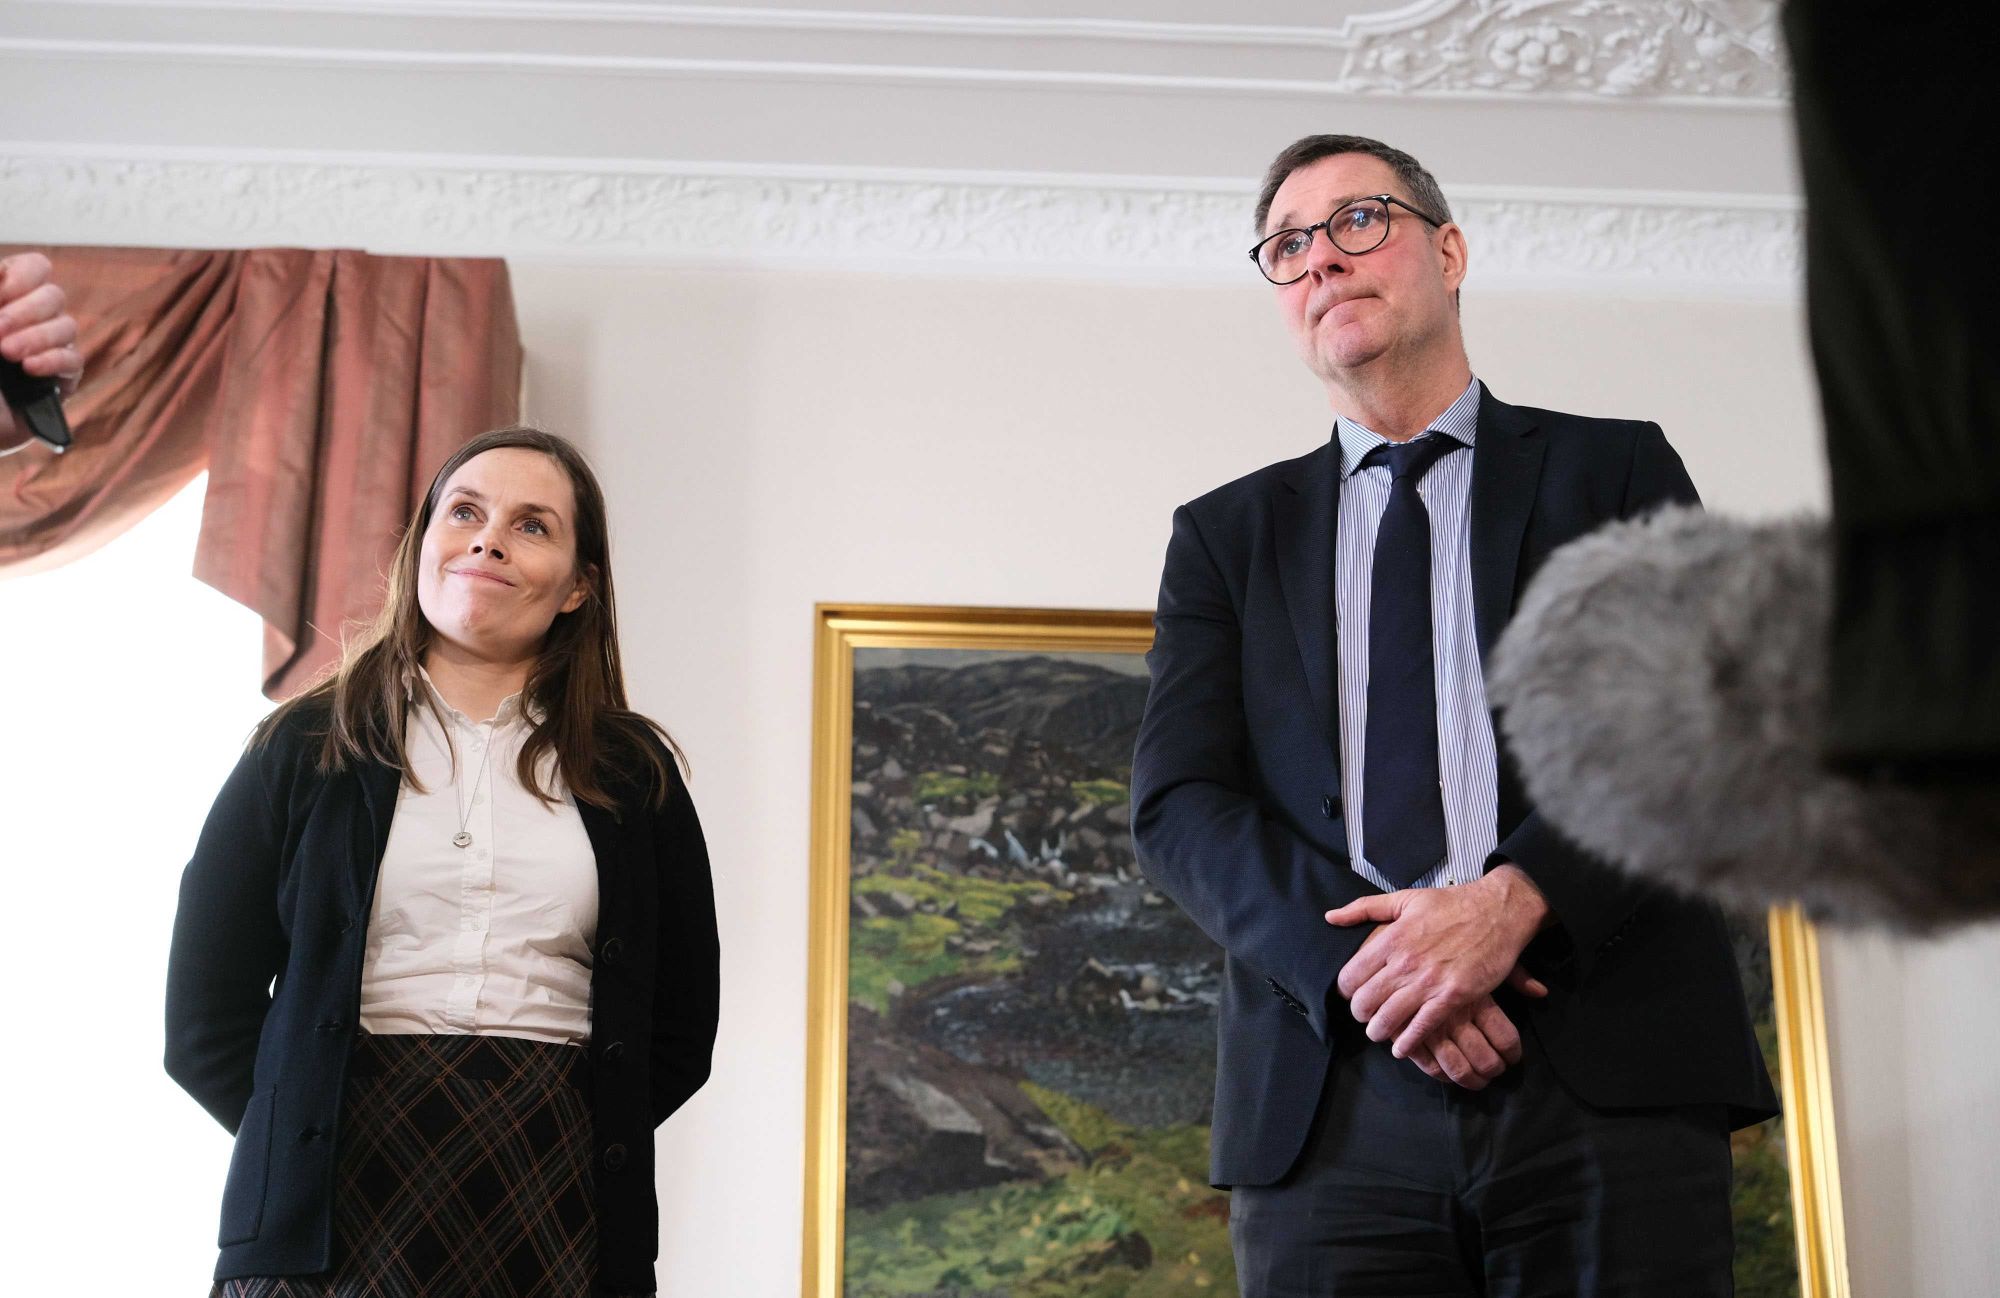 Health Minister Willum Þór Þórsson and Prime Minister Katrín Jakobsdóttir